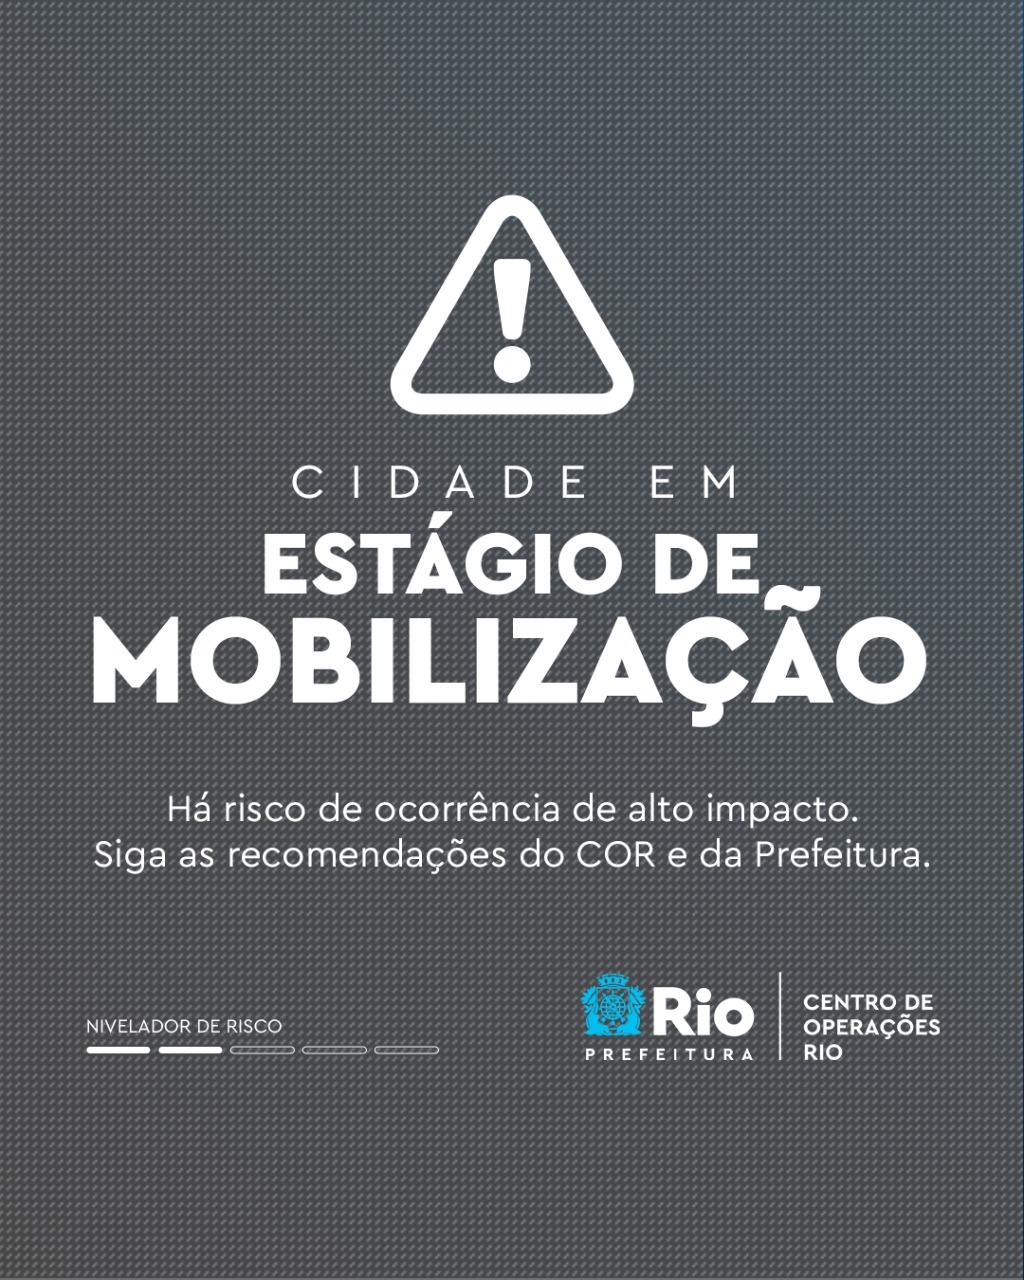 Rio entra em estágio de mobilização por conta da chuva nesta terça